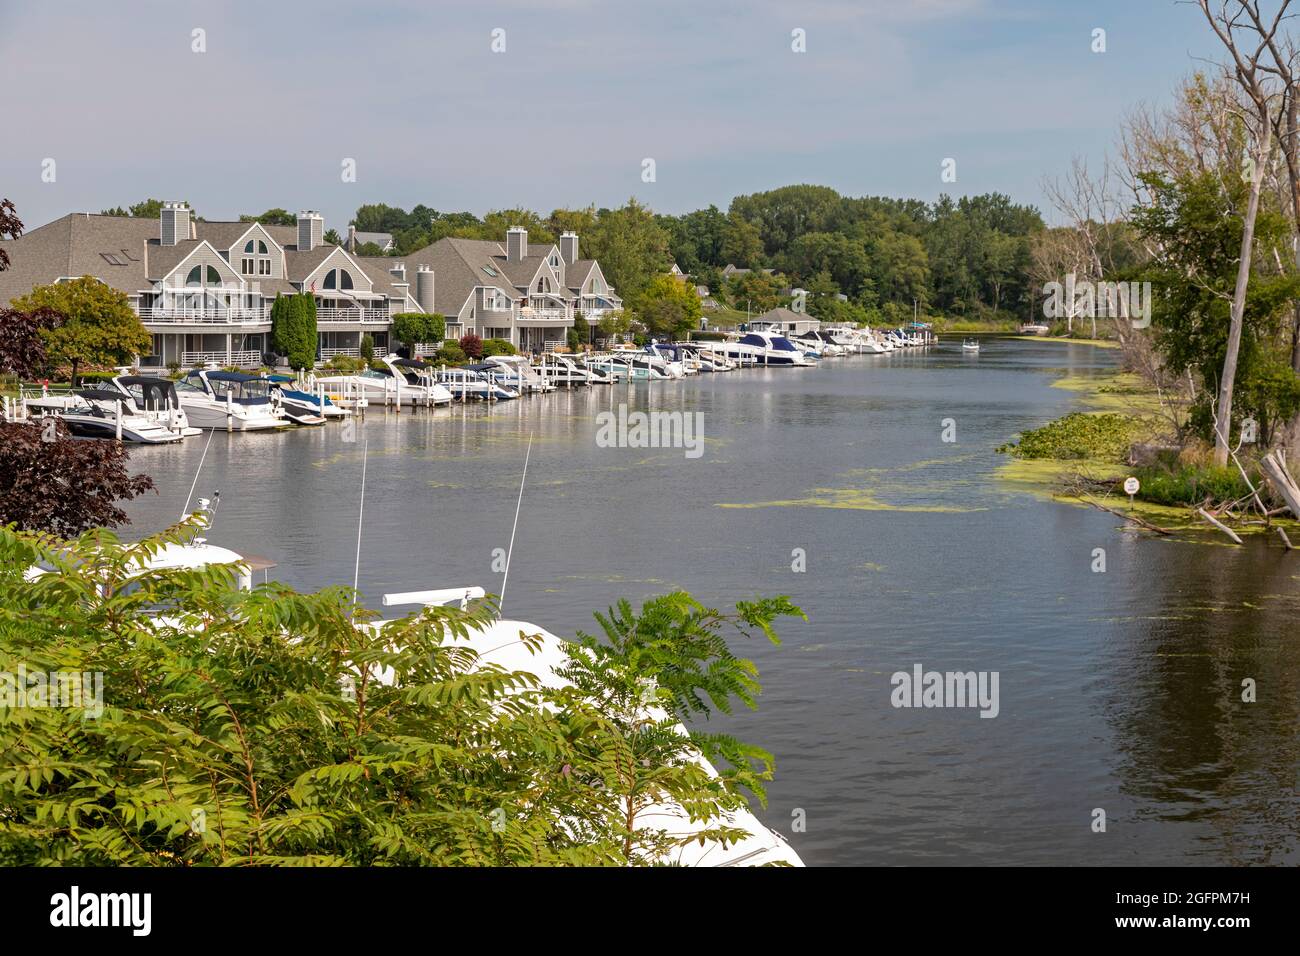 New Buffalo, Michigan - Maisons au bord de l'eau avec des bateaux le long de la rivière Galien, près de là où elle se jette dans le lac Michigan. La région est populaire auprès des visiteurs Banque D'Images